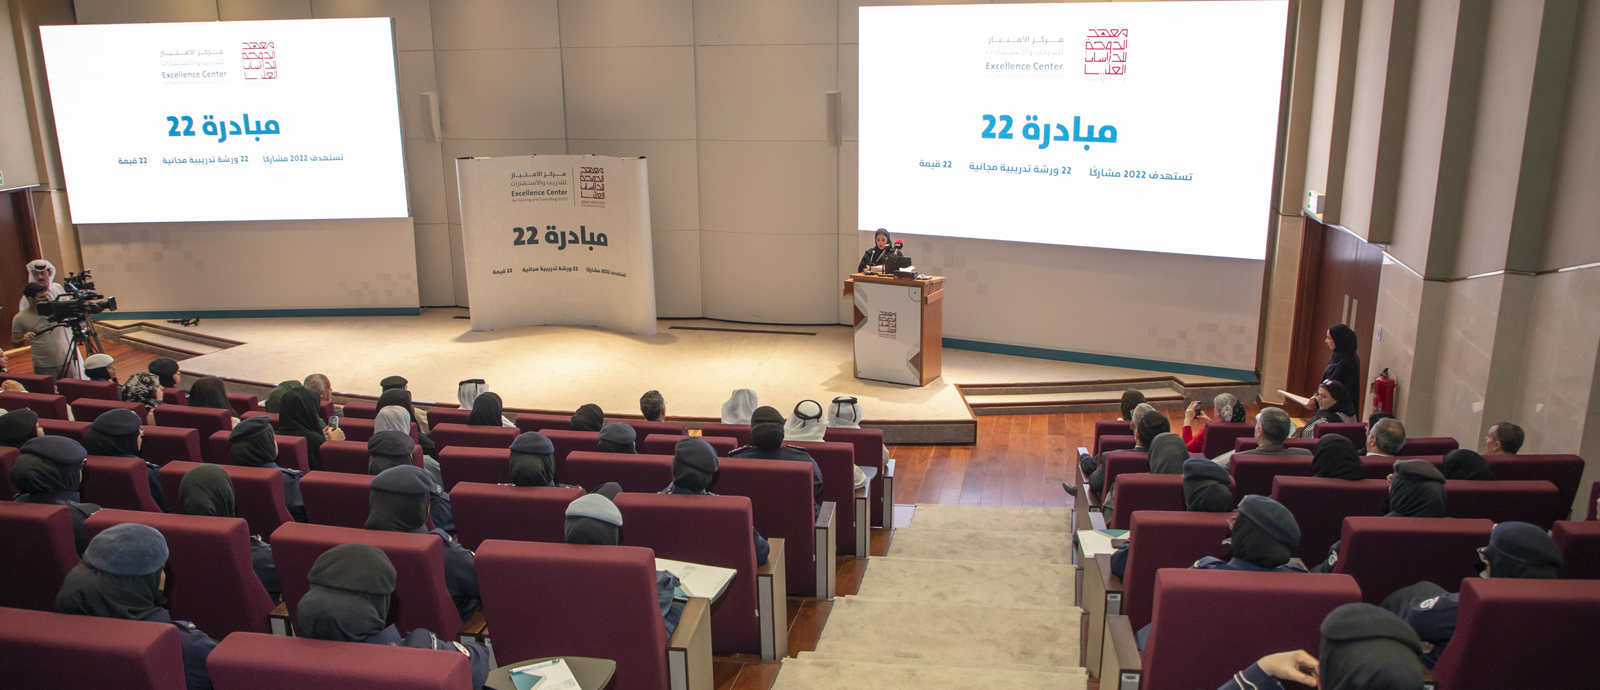 معهد الدوحة للدراسات العليا يطلق مبادرة 22